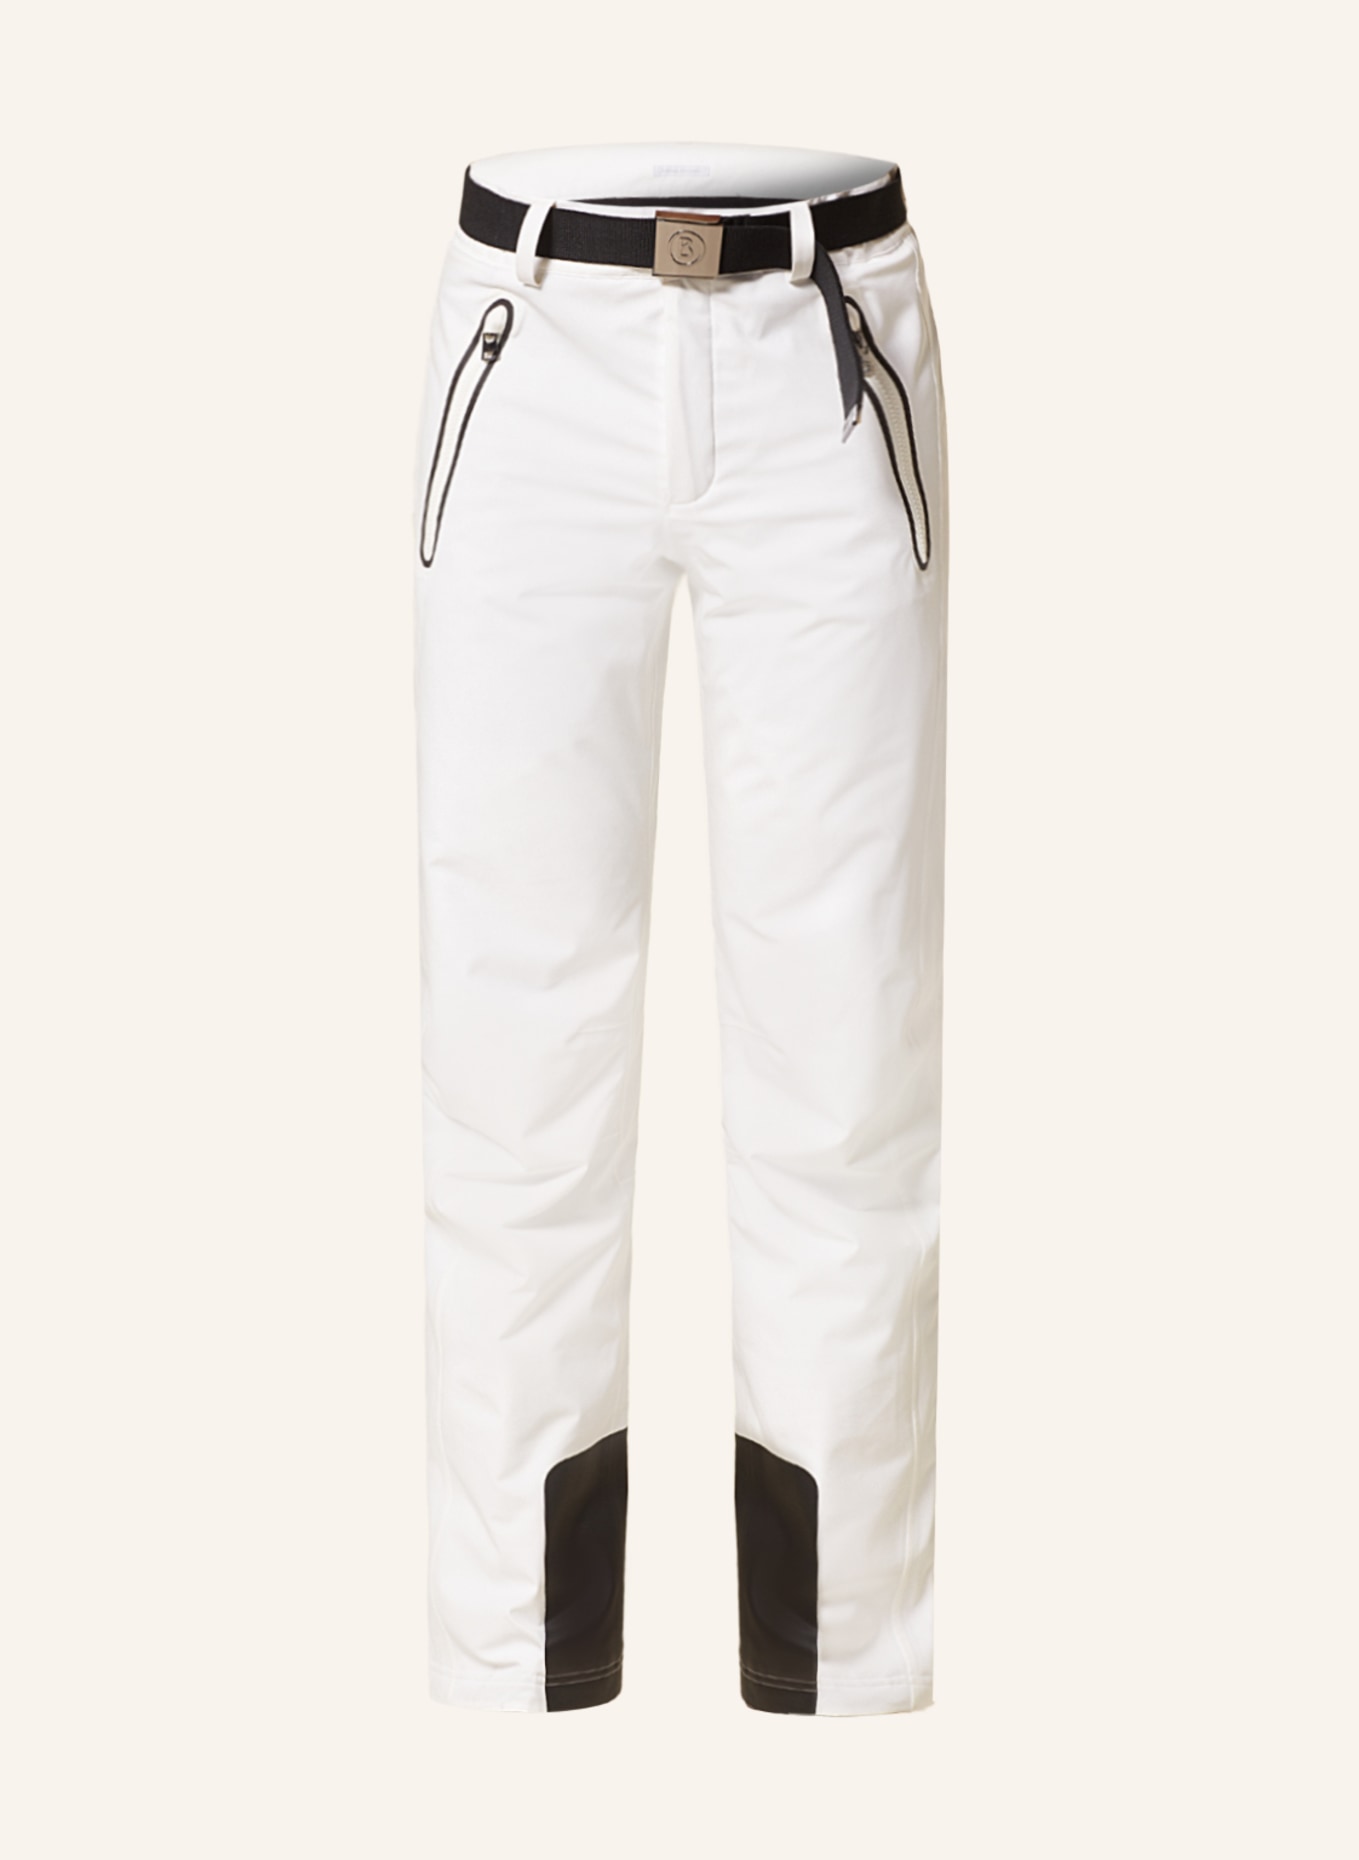 BOGNER Ski pants THORE in white